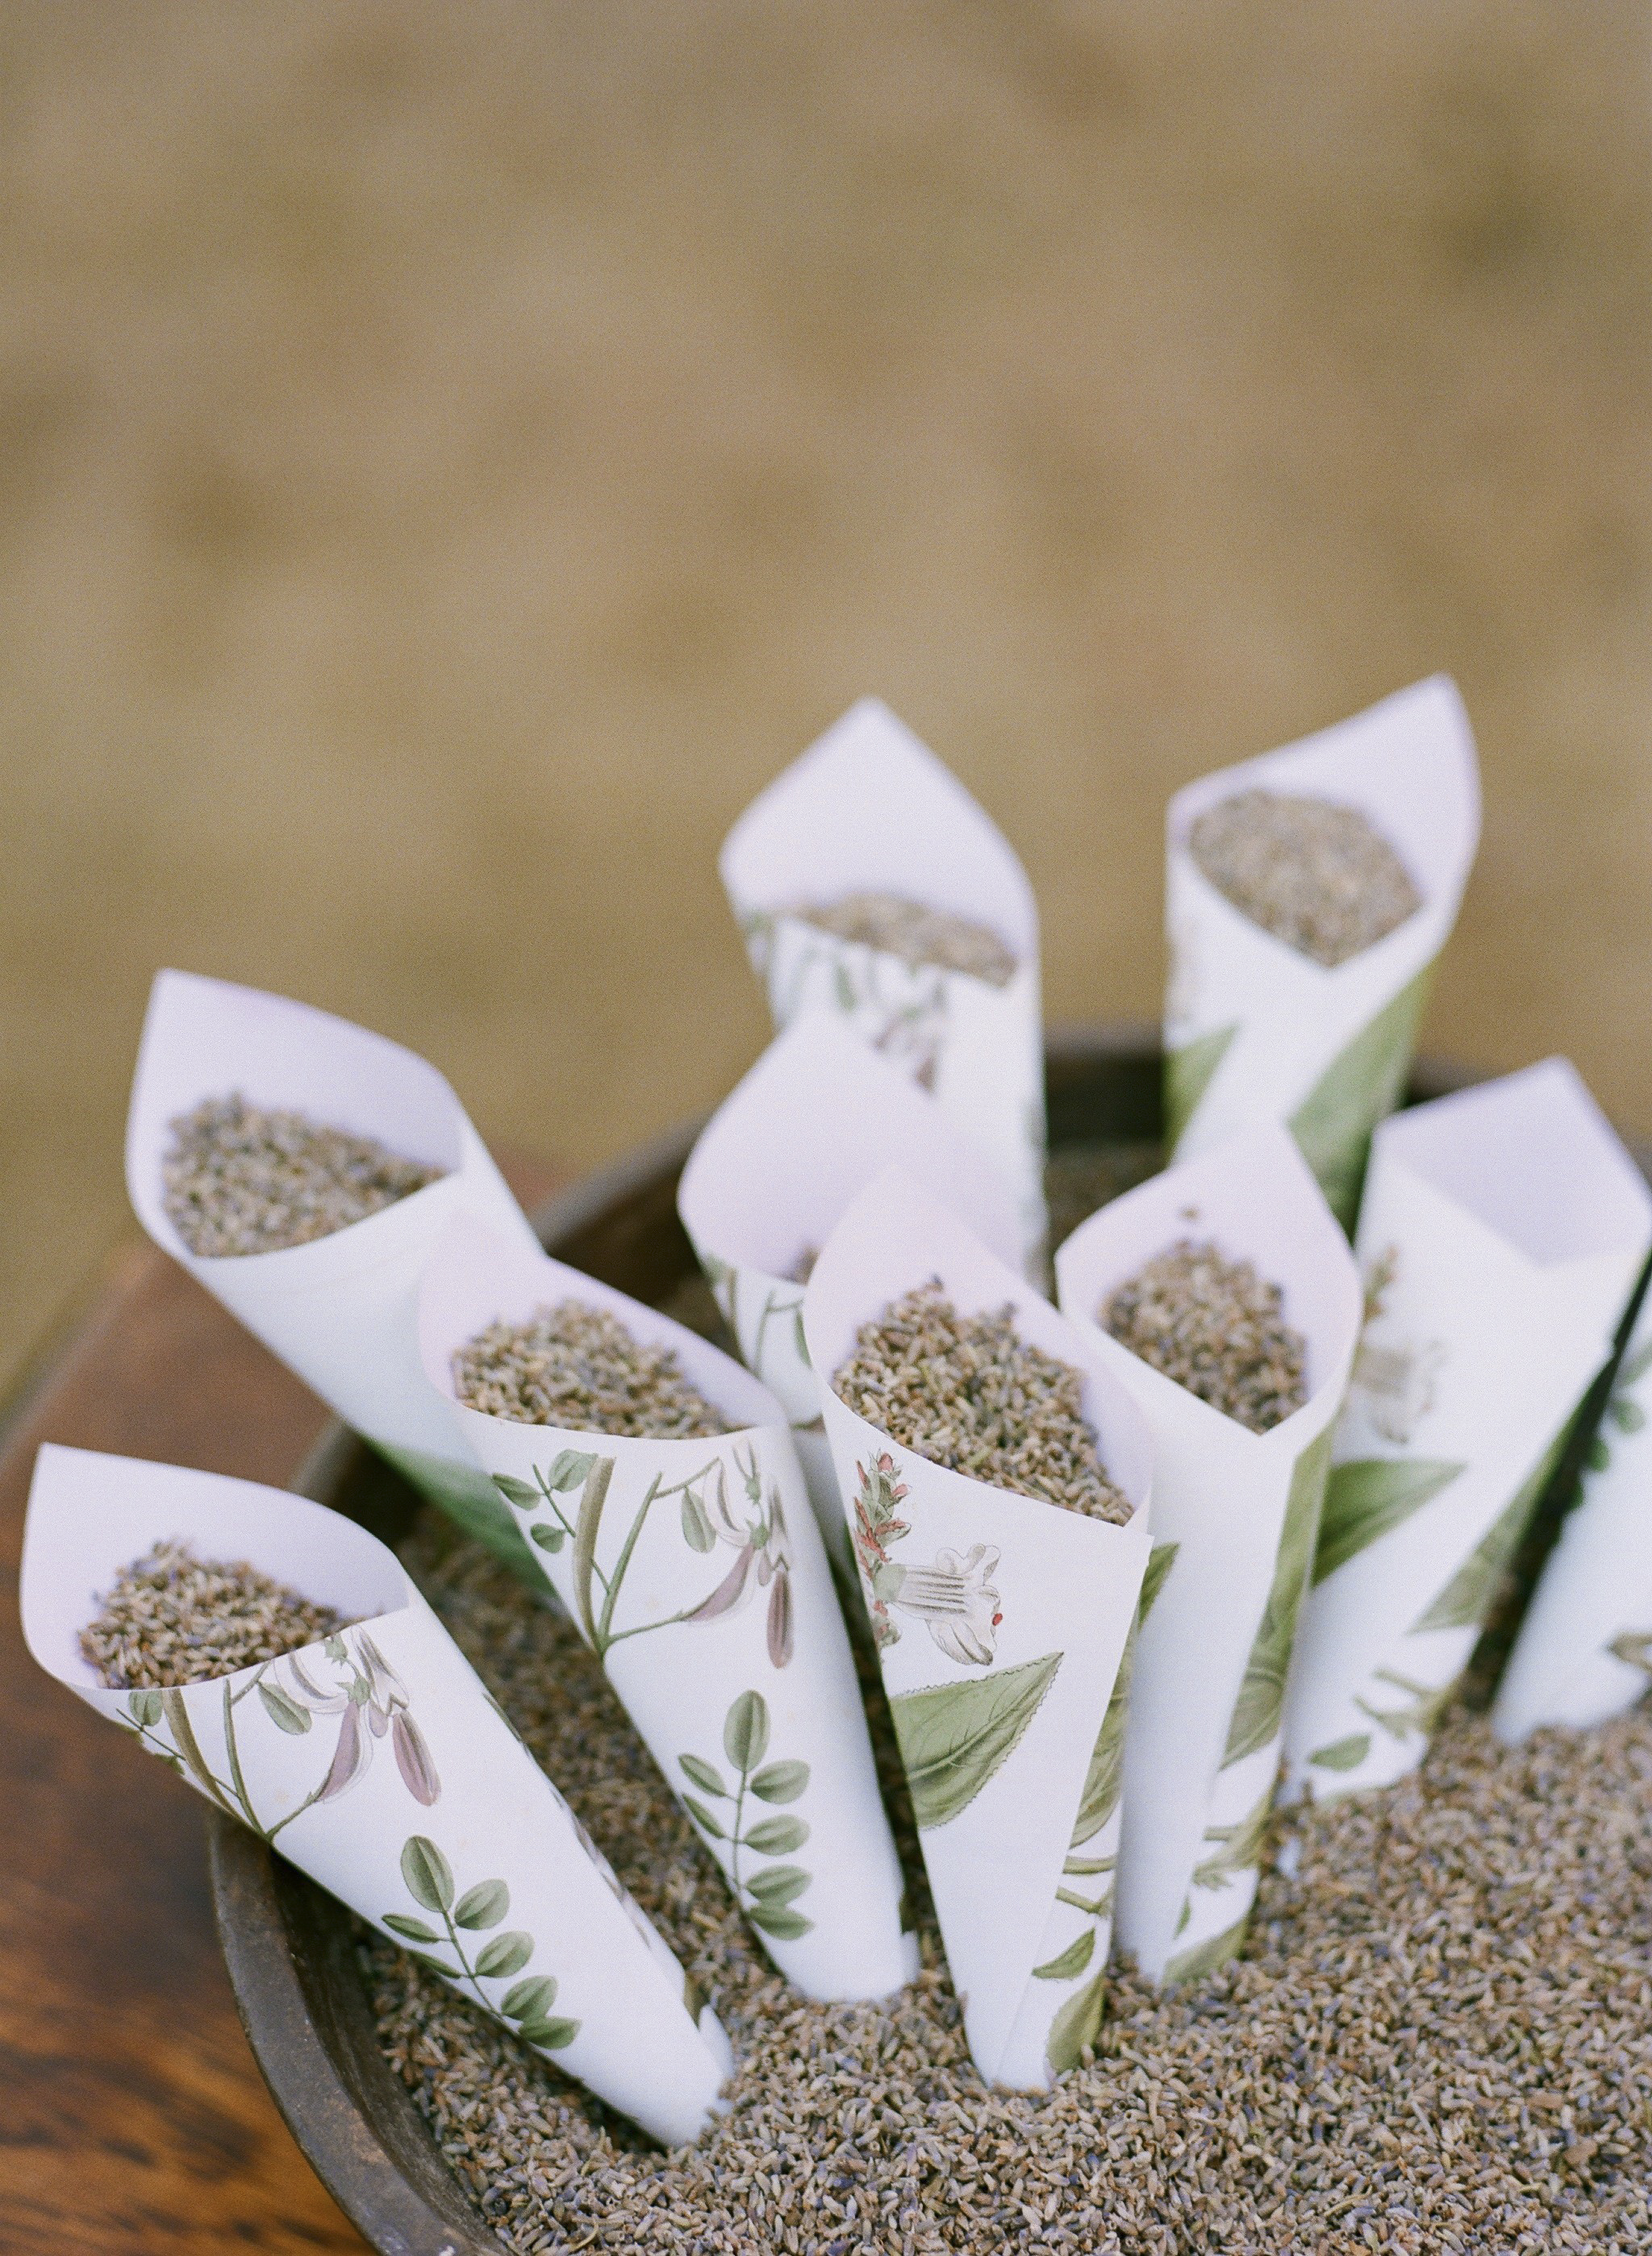 Bird Seed in Paper Cones